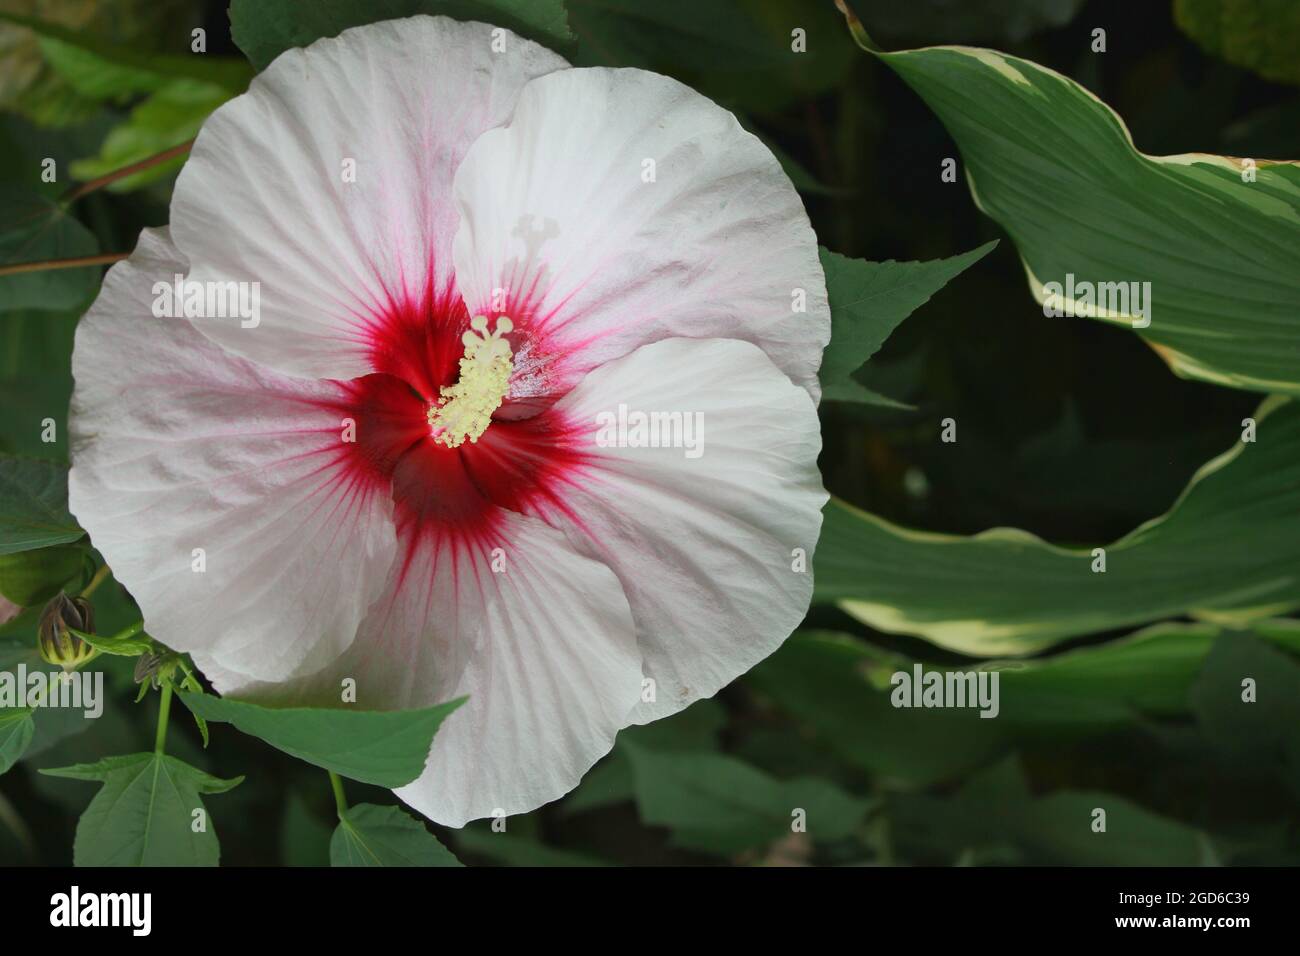 Enorme fiore gigante bianco e rosa di ibisco che cresce nel